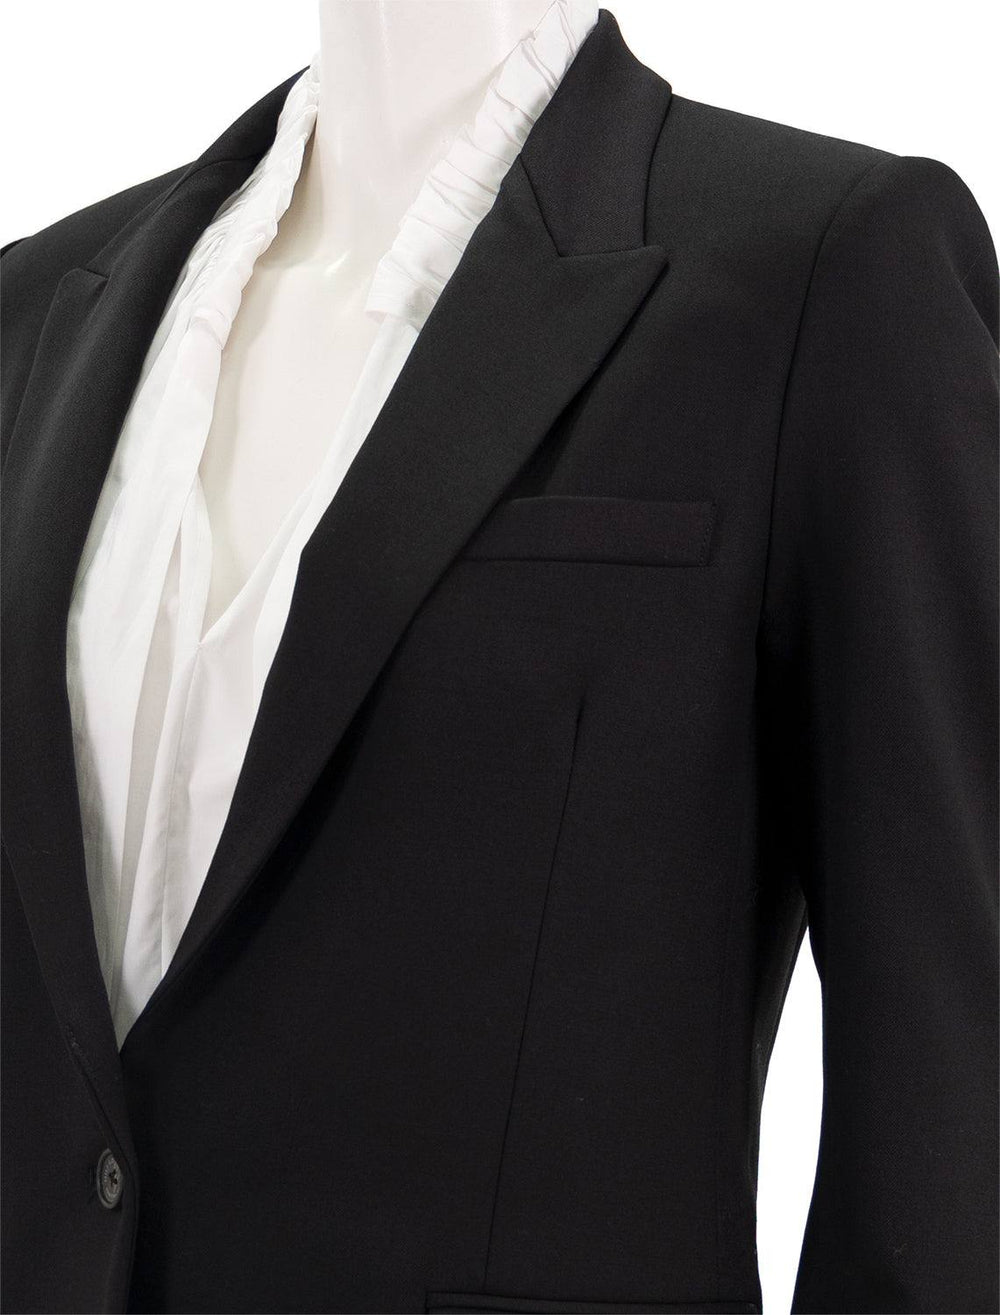 Close-up view of Nili Lotan's diane blazer in black.